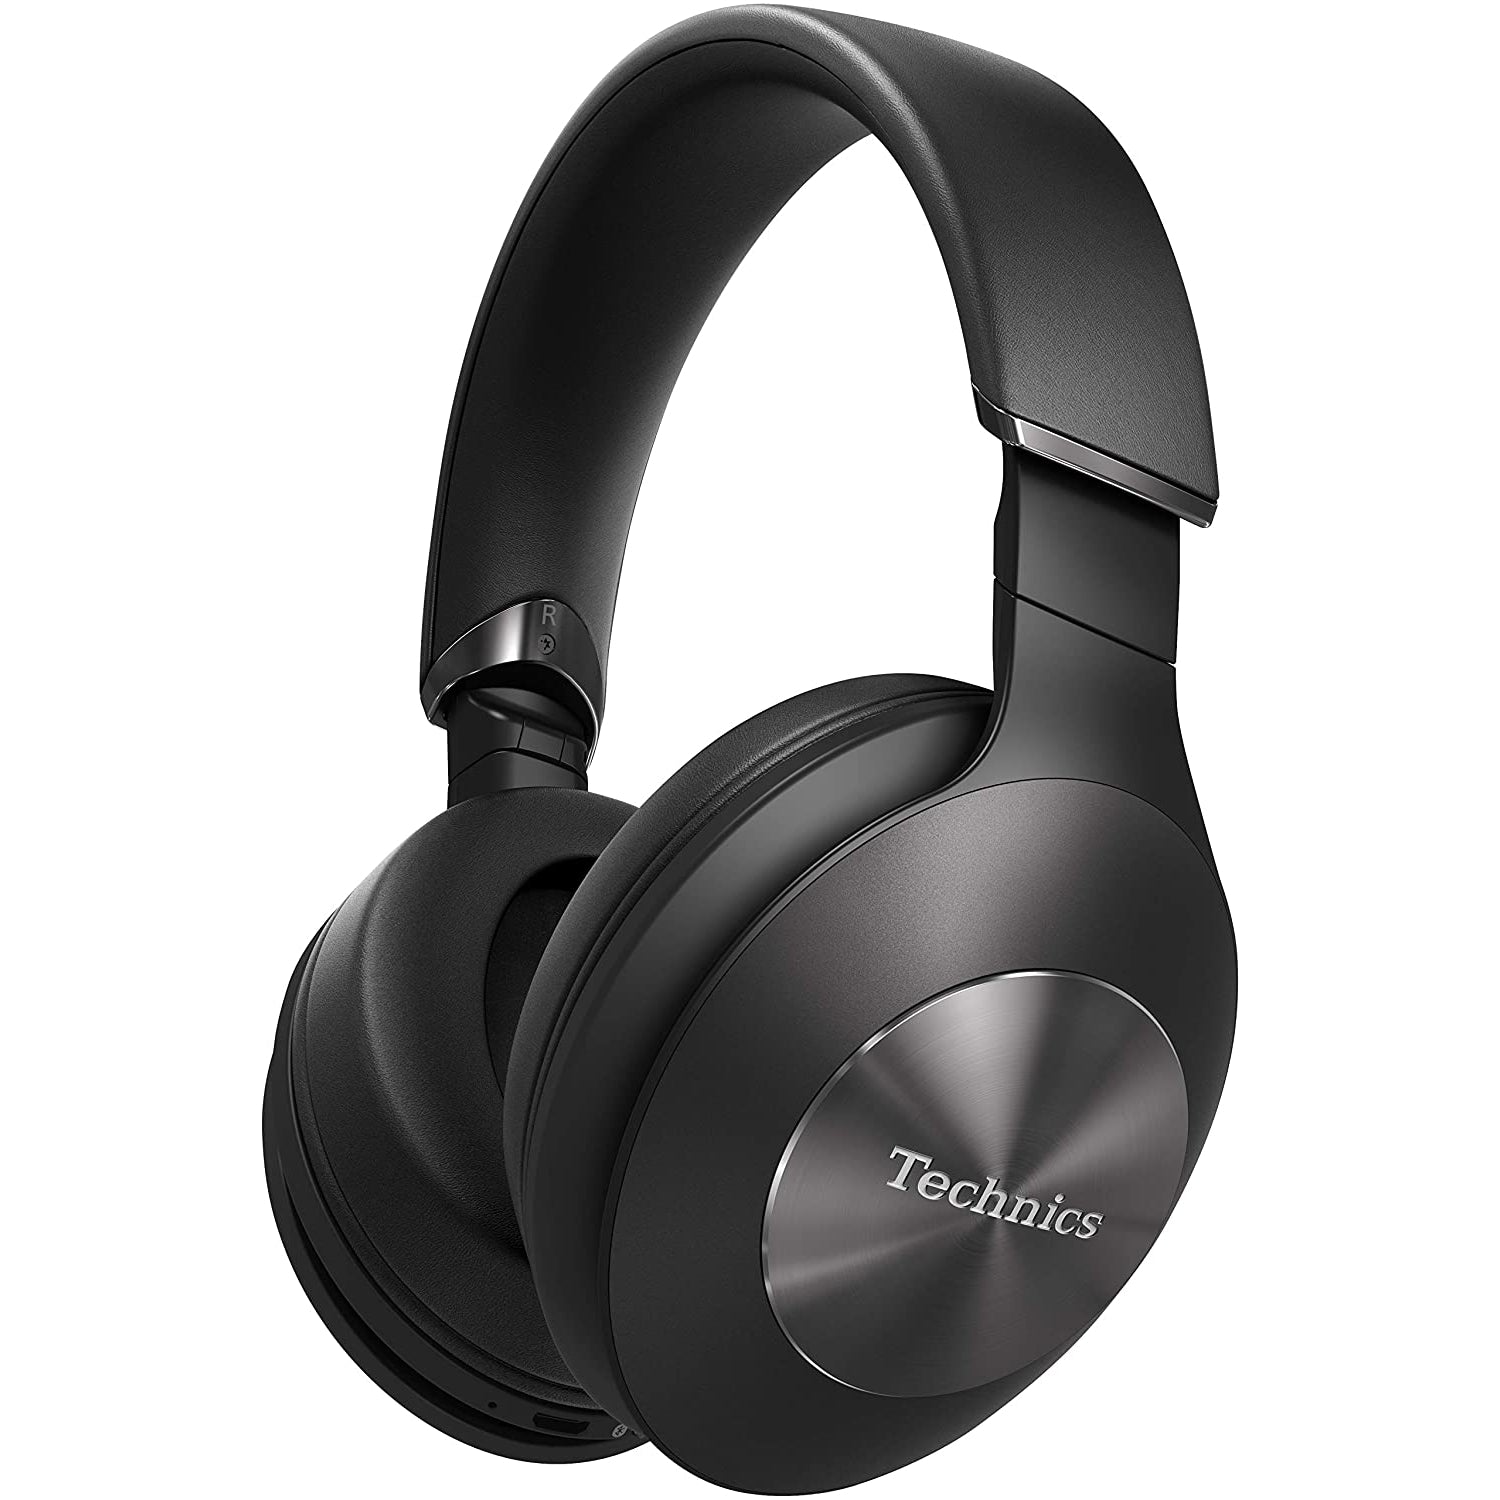 Technics EAH-F70 Premium Noise Cancelling Bluetooth Headphones, Black / Silver